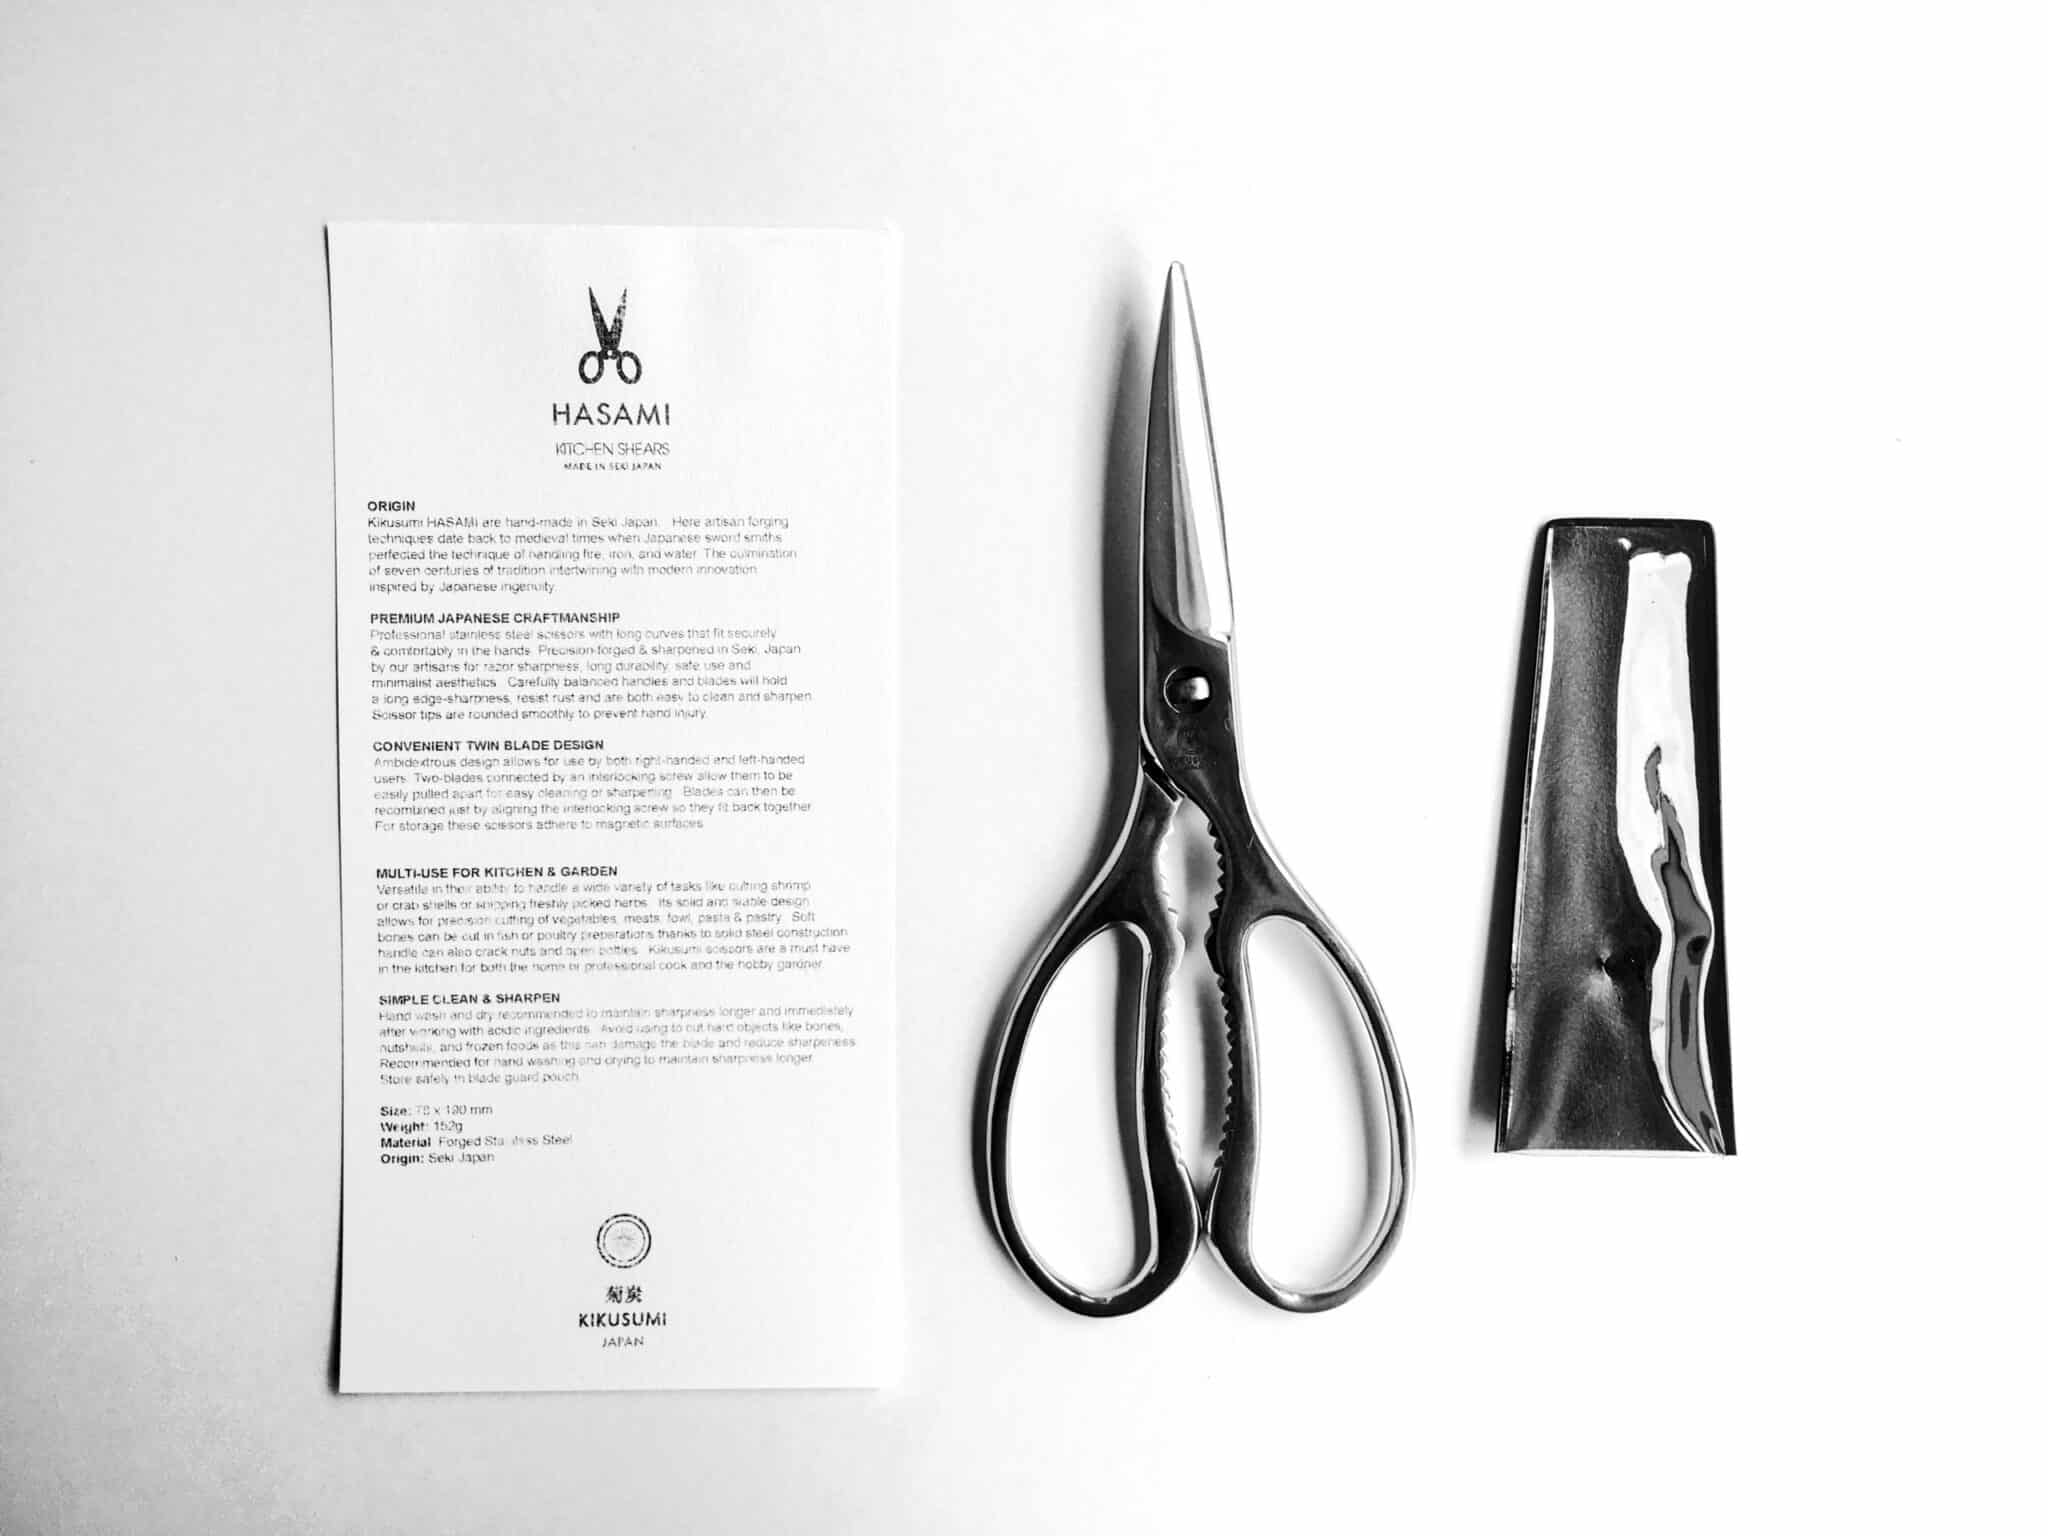 Kikusumi HASAMI Kitchen Scissors Japanese Kitchen Shears / Herb 